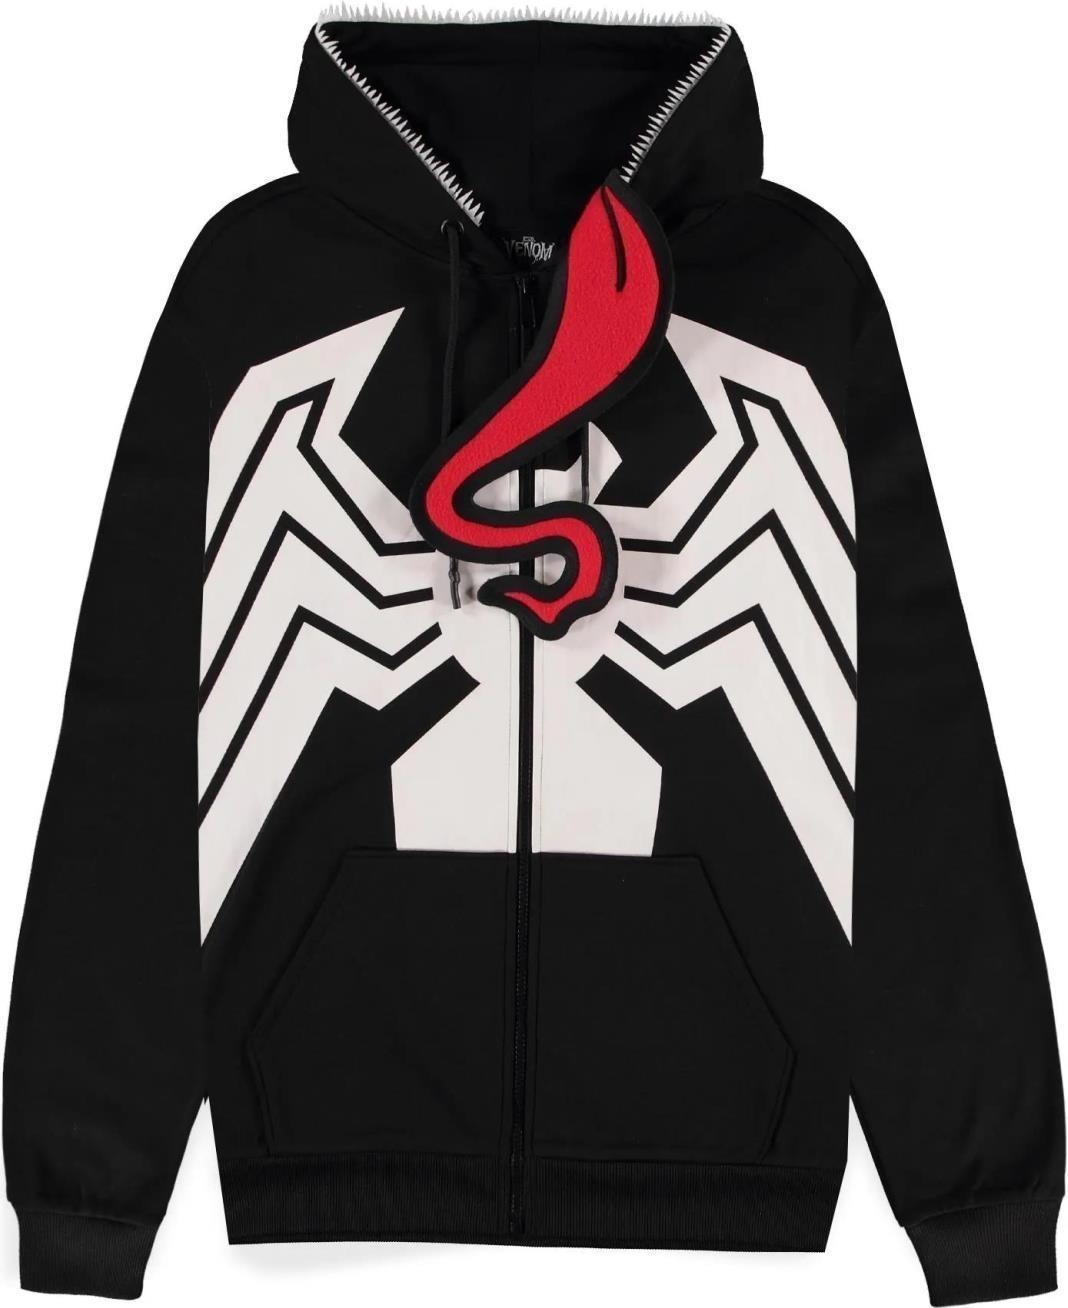 Abbigliamento Venom 2: Novelty Premium Black (Felpa Con Cappuccio Unisex Tg. L) NUOVO SIGILLATO, EDIZIONE DEL 02/11/2023 SUBITO DISPONIBILE